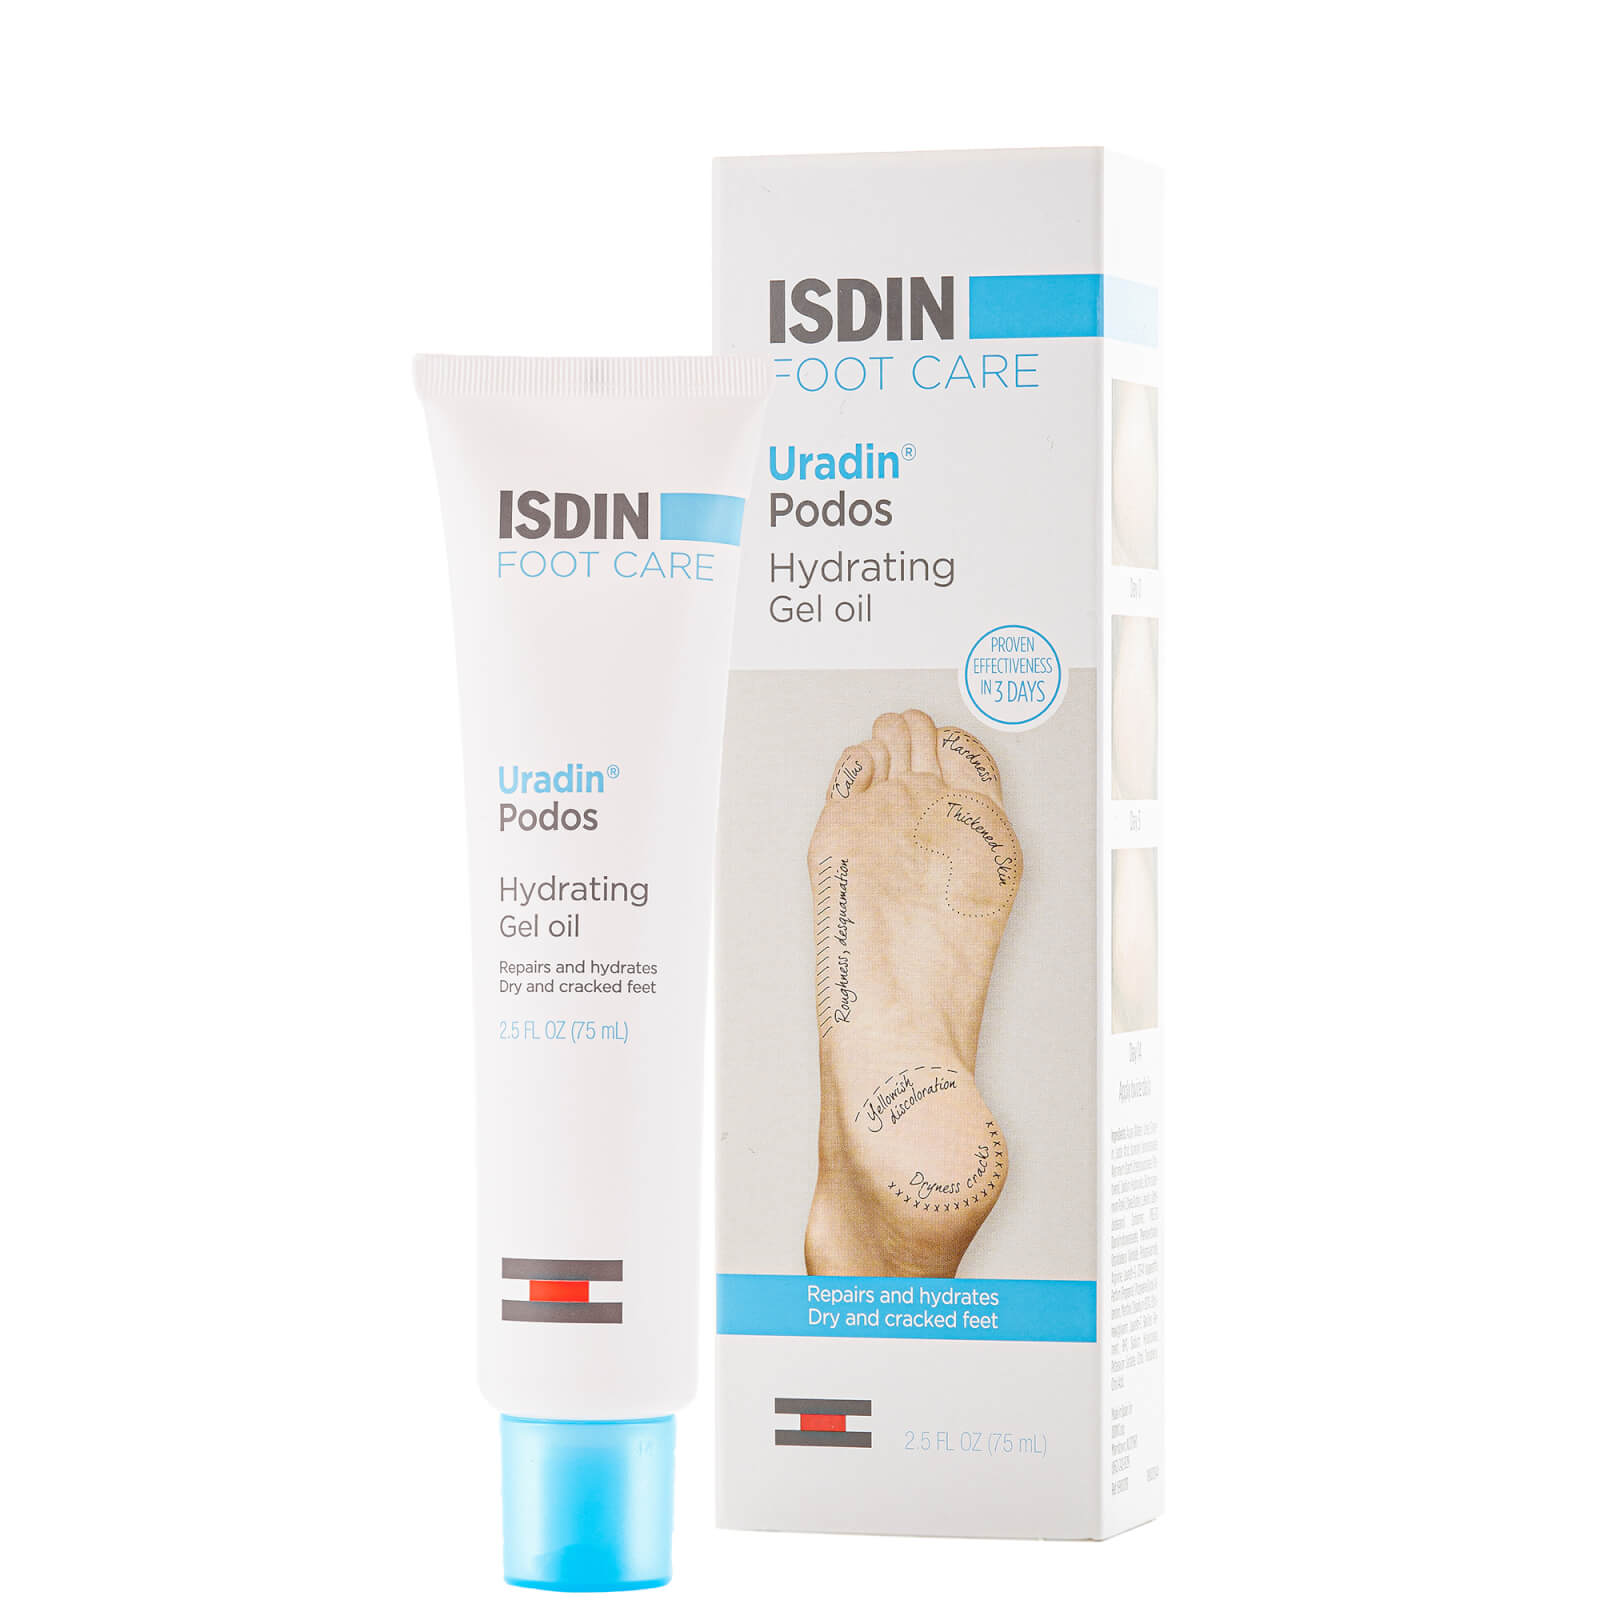 Isdin Uradin Podos Gel-oil Moisturizing Gel With 10% Urea For Dry Feet 2.5 Fl. oz